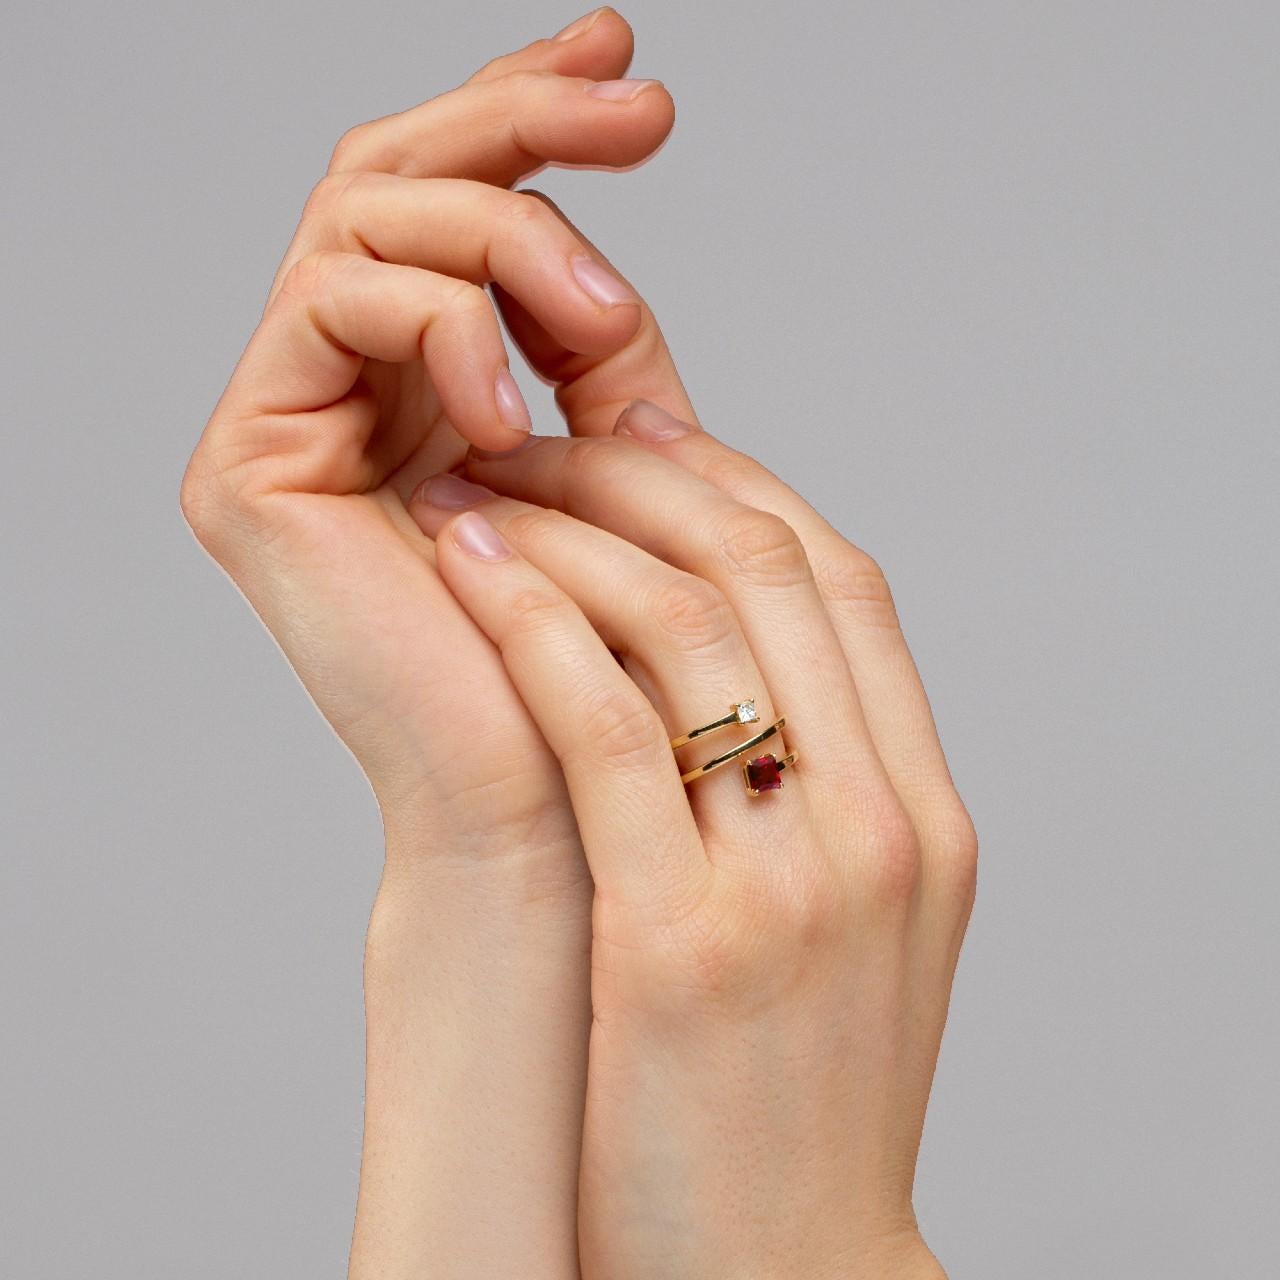 Colección de diseño Alex Jona, hecha a mano en Italia, banda de anillo cruzado de oro amarillo de 18 quilates, engastada con un rubí birmano de talla cuadrada de 0,67 quilates y un diamante blanco de talla cuadrada de 0,12 quilates.
Dimensiones: H